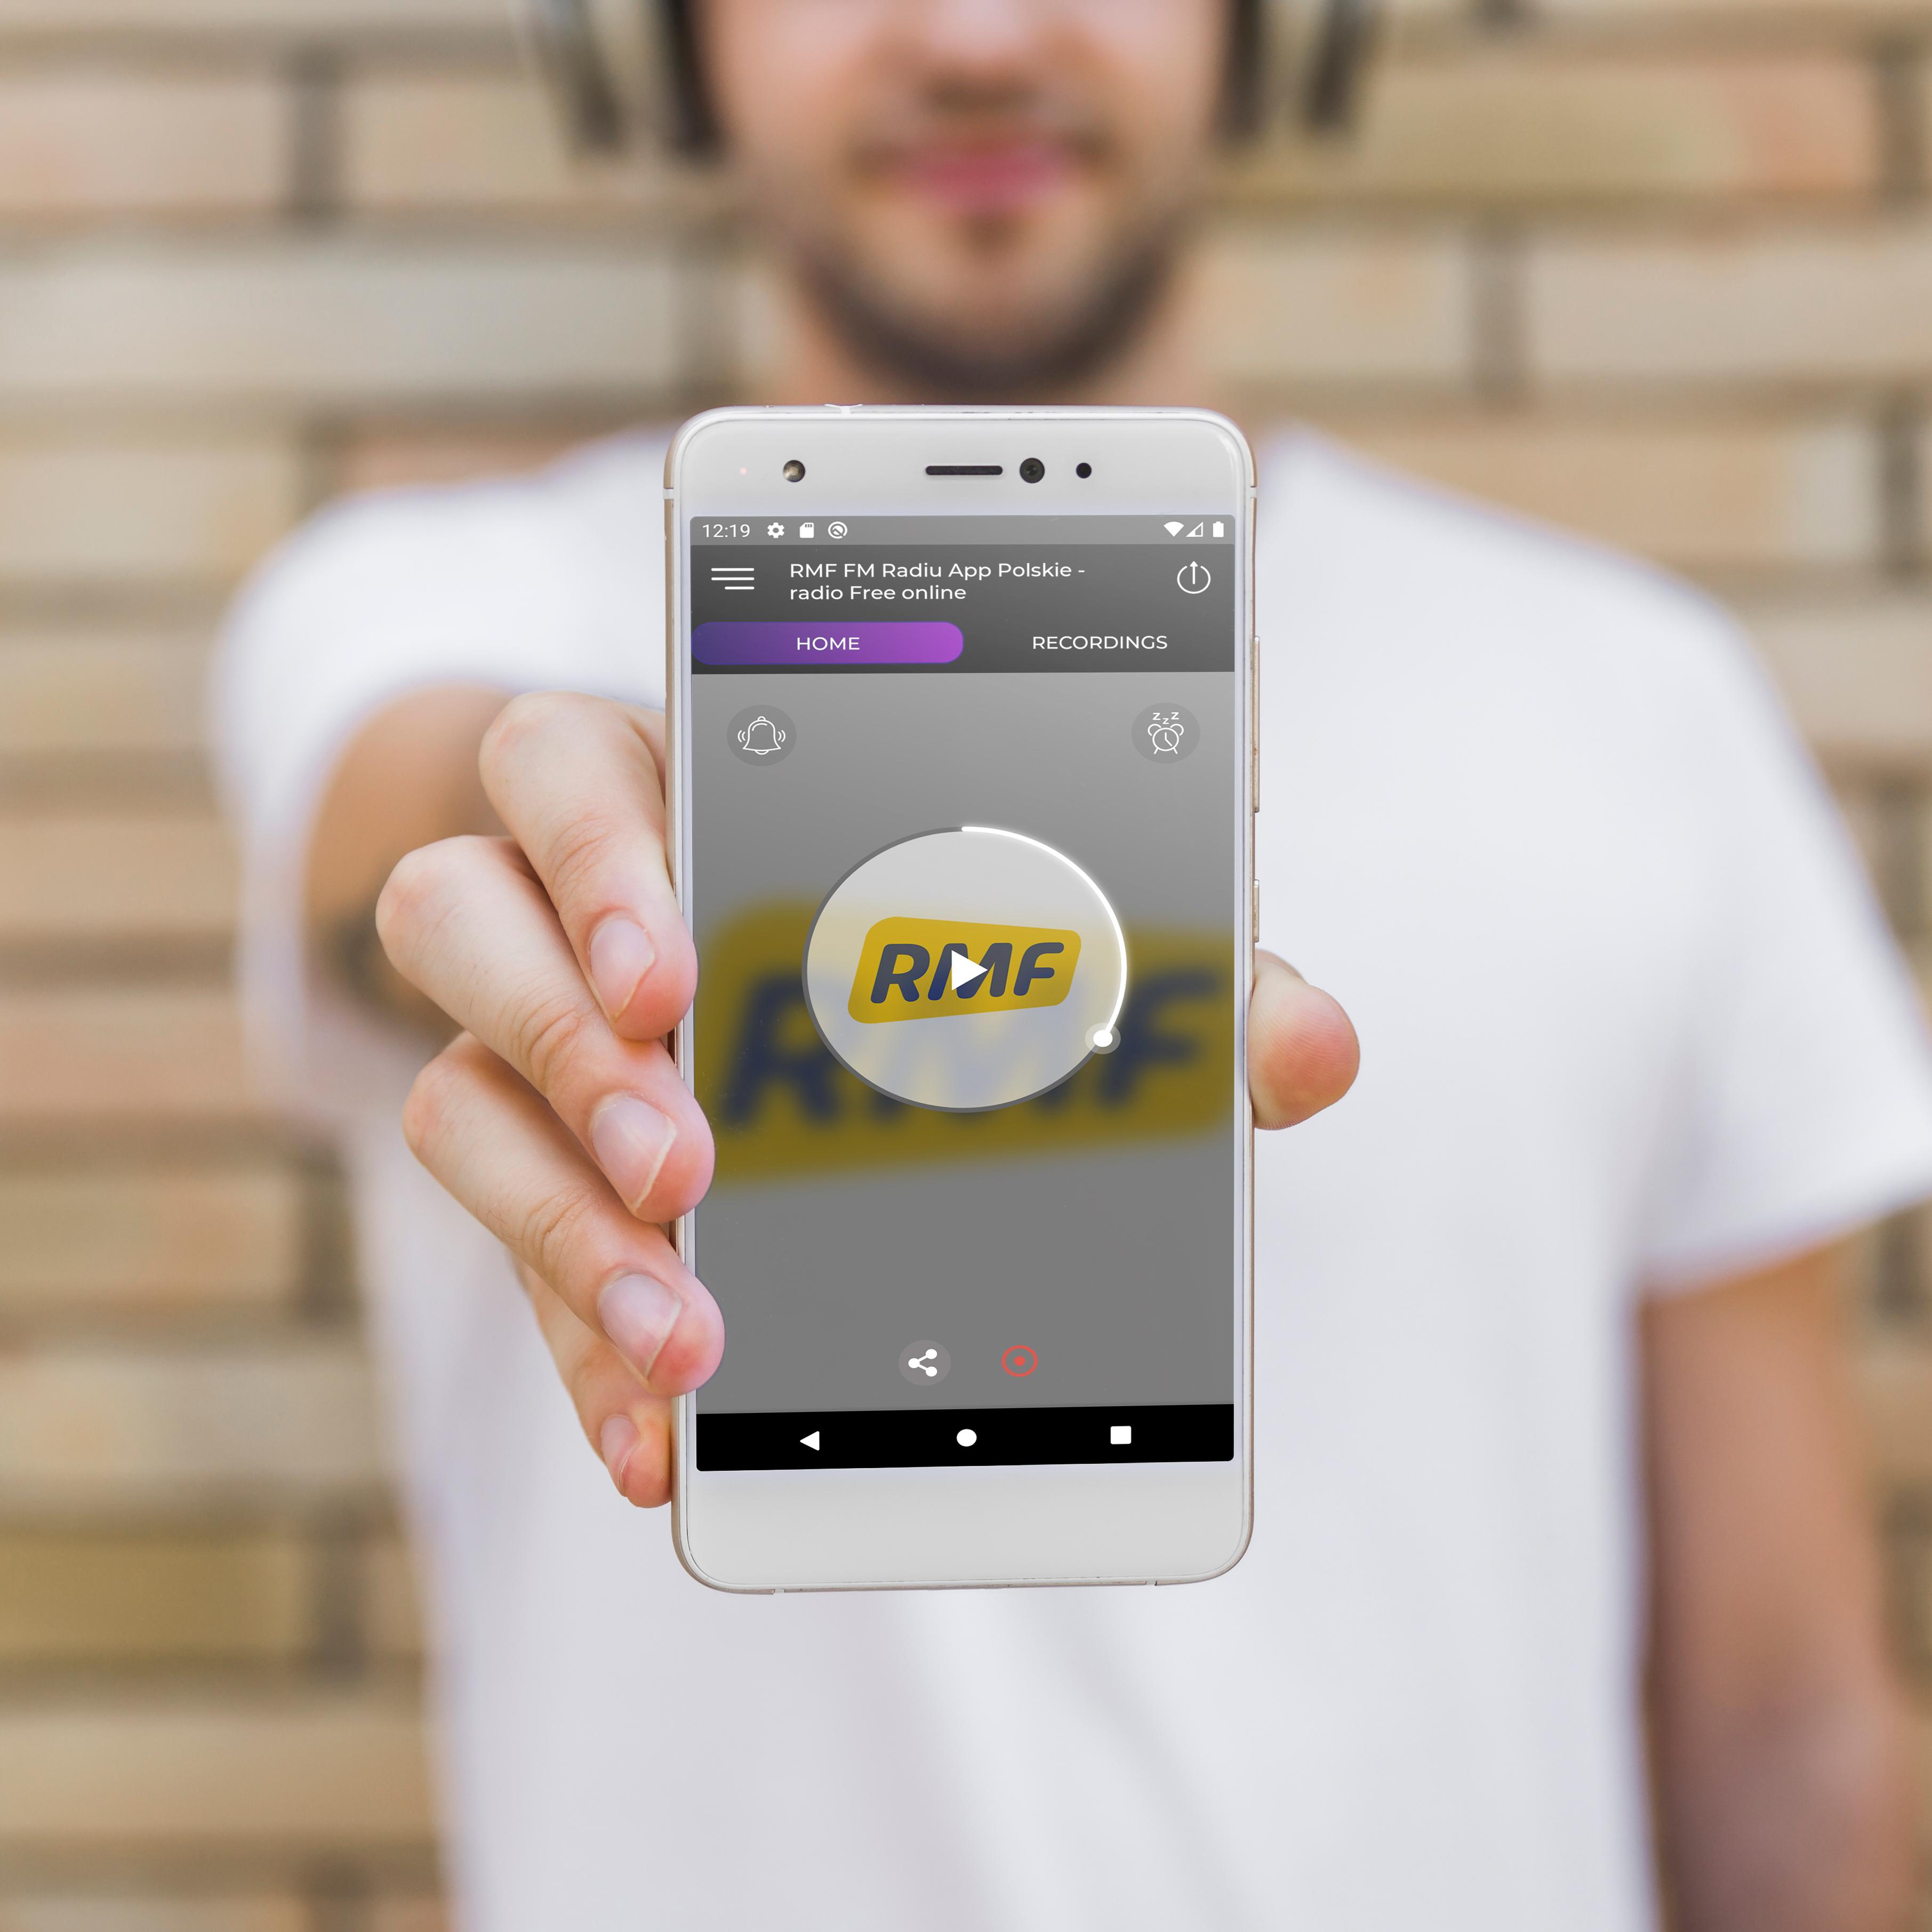 RMF FM Radiu App Polskie - radio Free online wolny für Android - APK  herunterladen